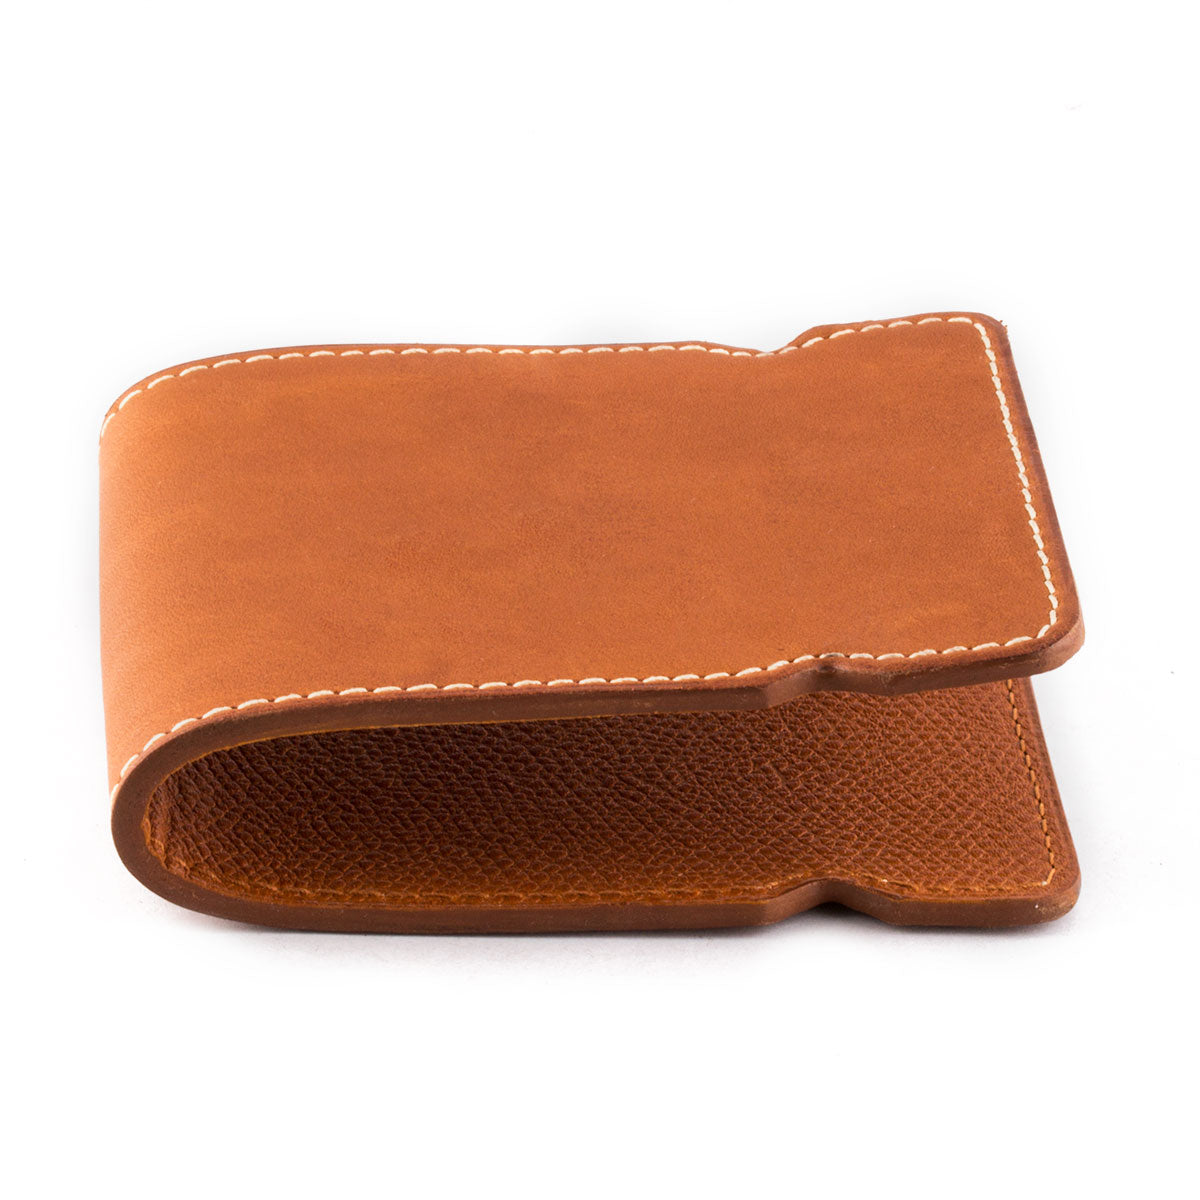 Porte billets cuir "Golf" - Veau barenia marron cognac - watch band leather strap - ABP Concept -